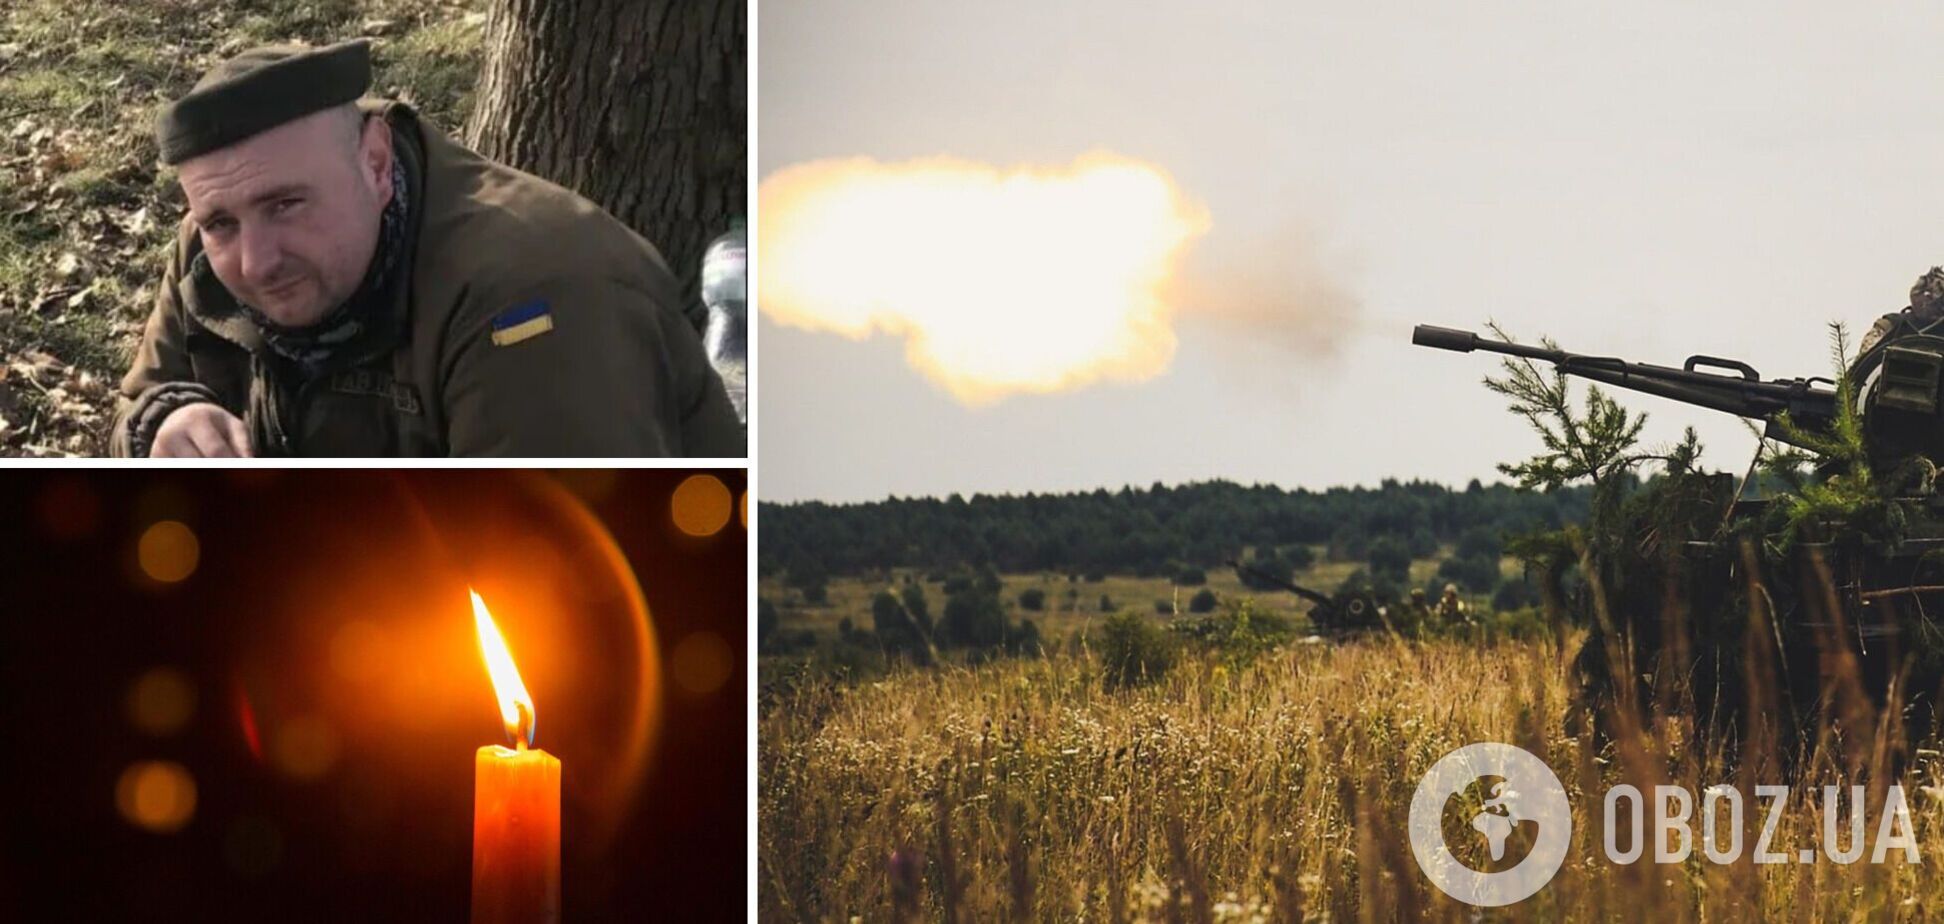 Заехал попрощаться с побратимами: во время вражеского обстрела на Донбассе погиб ветеран ООС. Фото